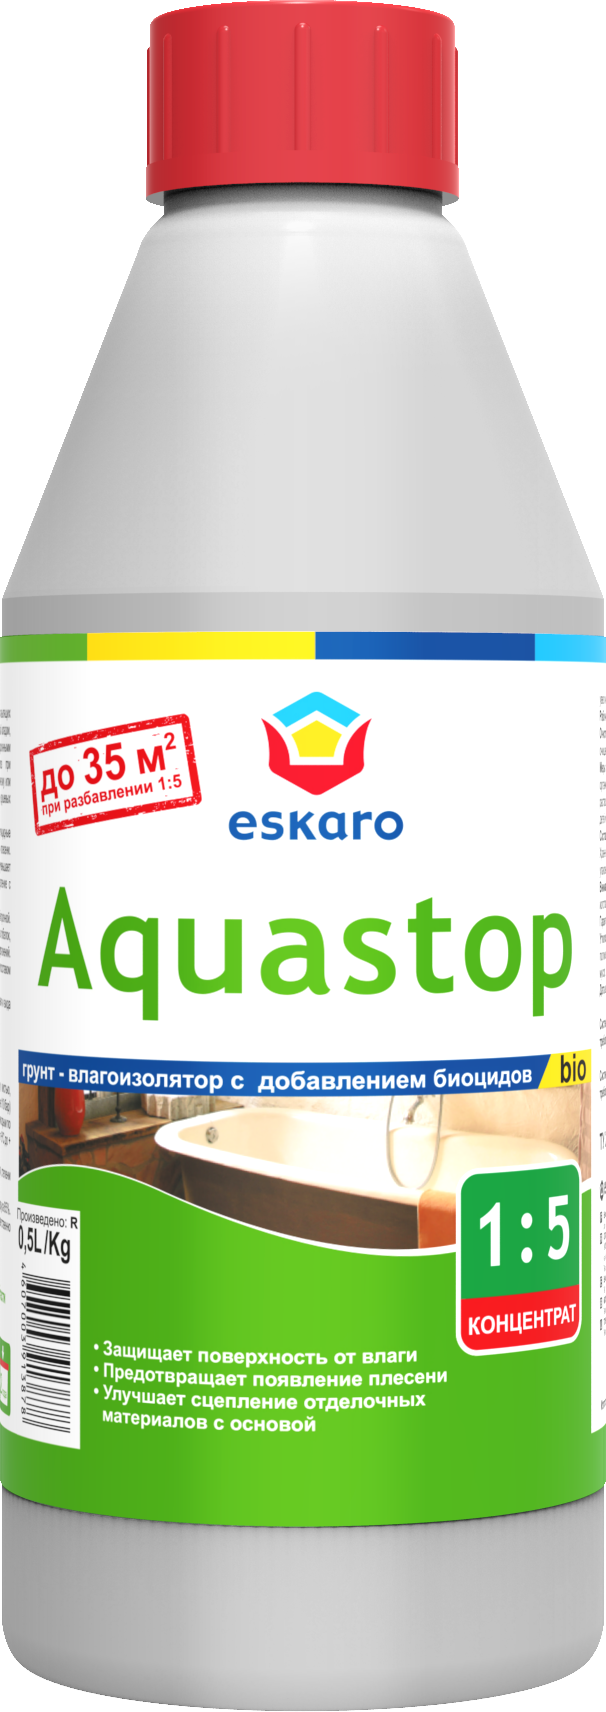 Грунт влагоизолятор с биоцидами 0,5 л Eskaro Aquastop Bio (концентрат 1:5)								